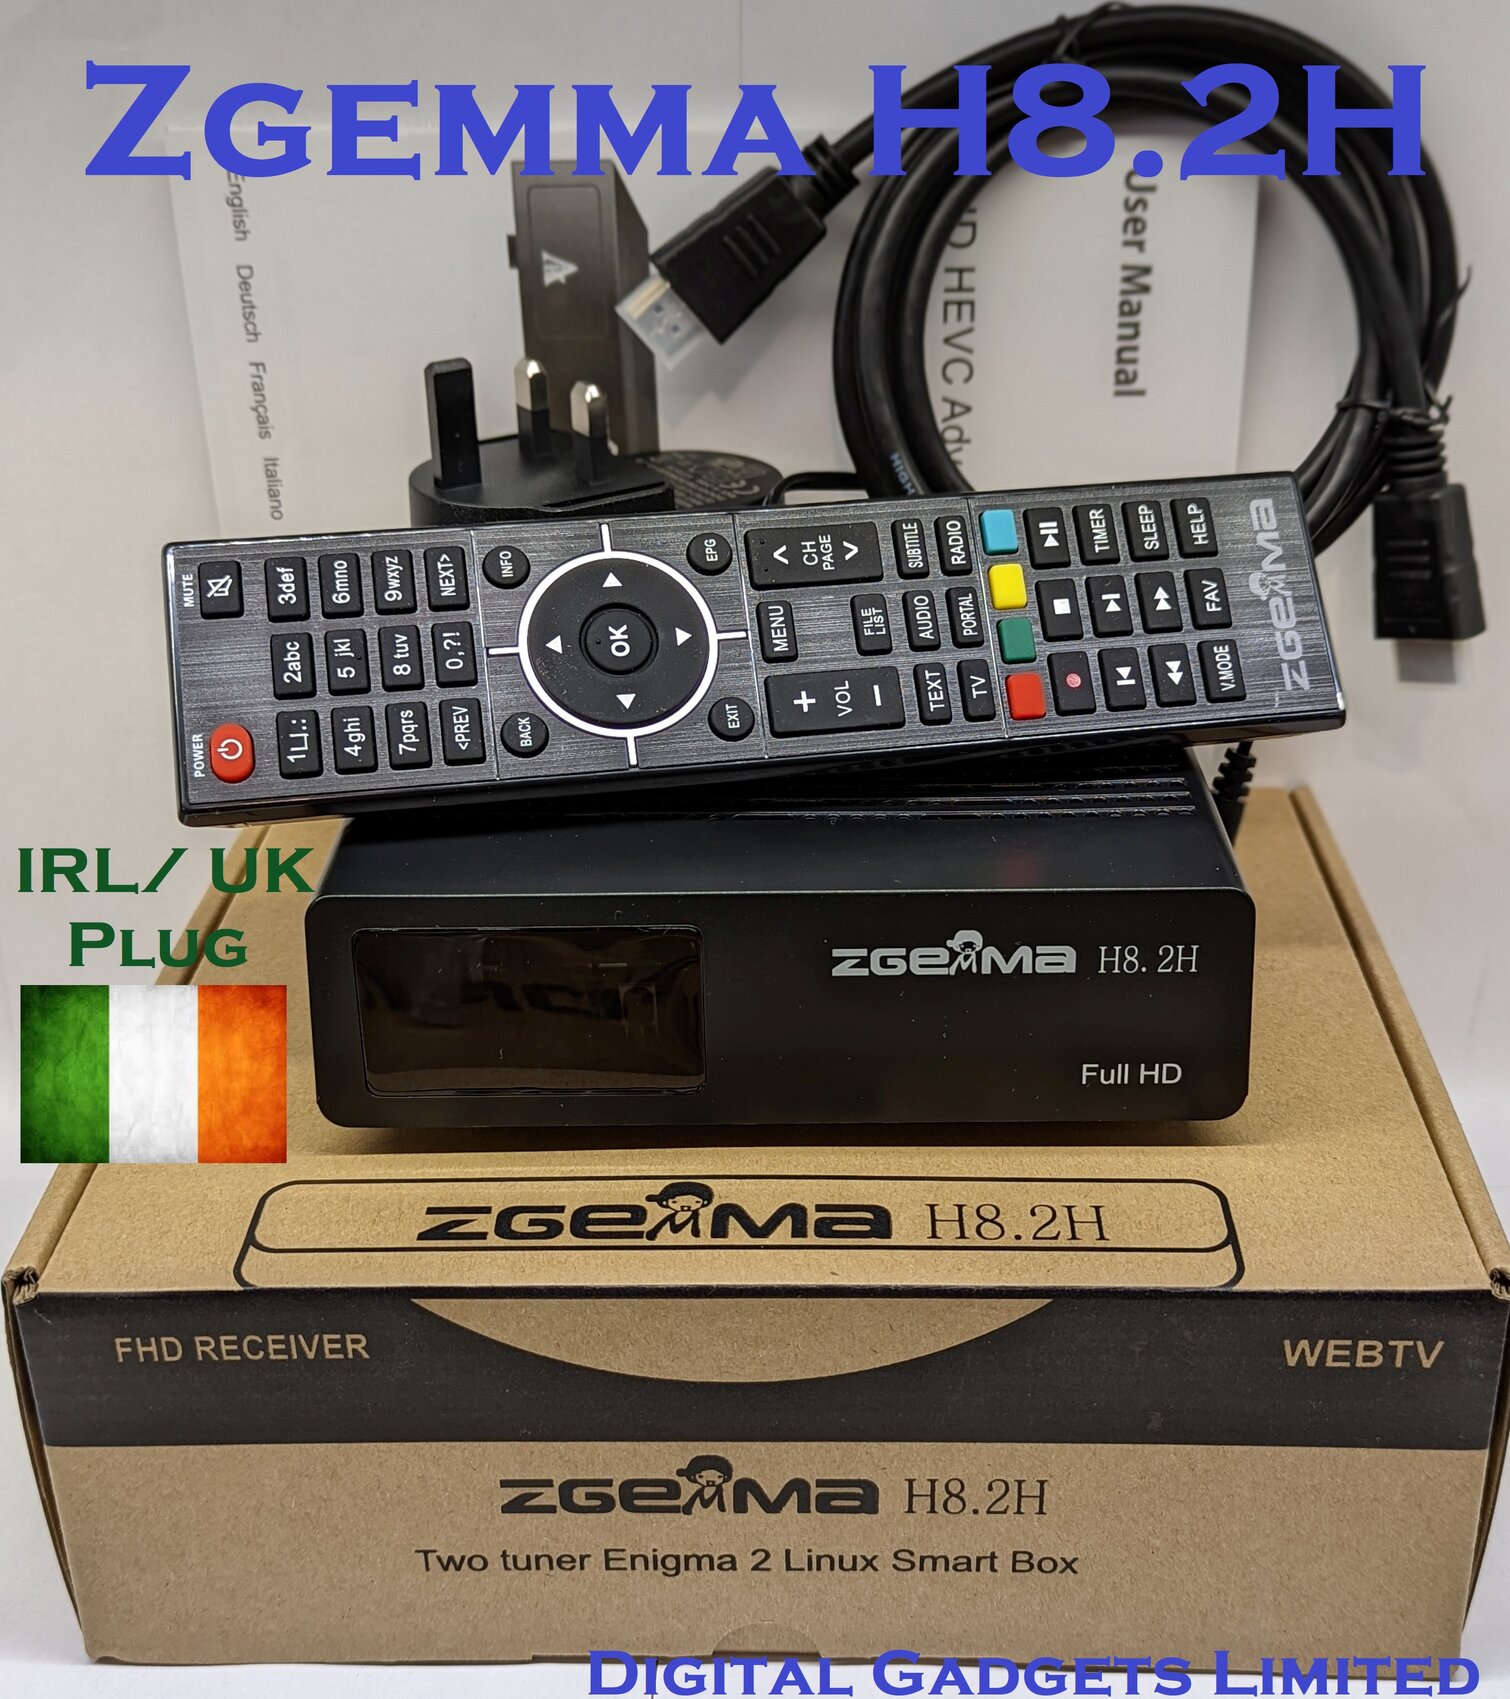 Zgemma H8.2h Satellite TV Receiver Linux OS DVB-S2X + DVB-T2/C